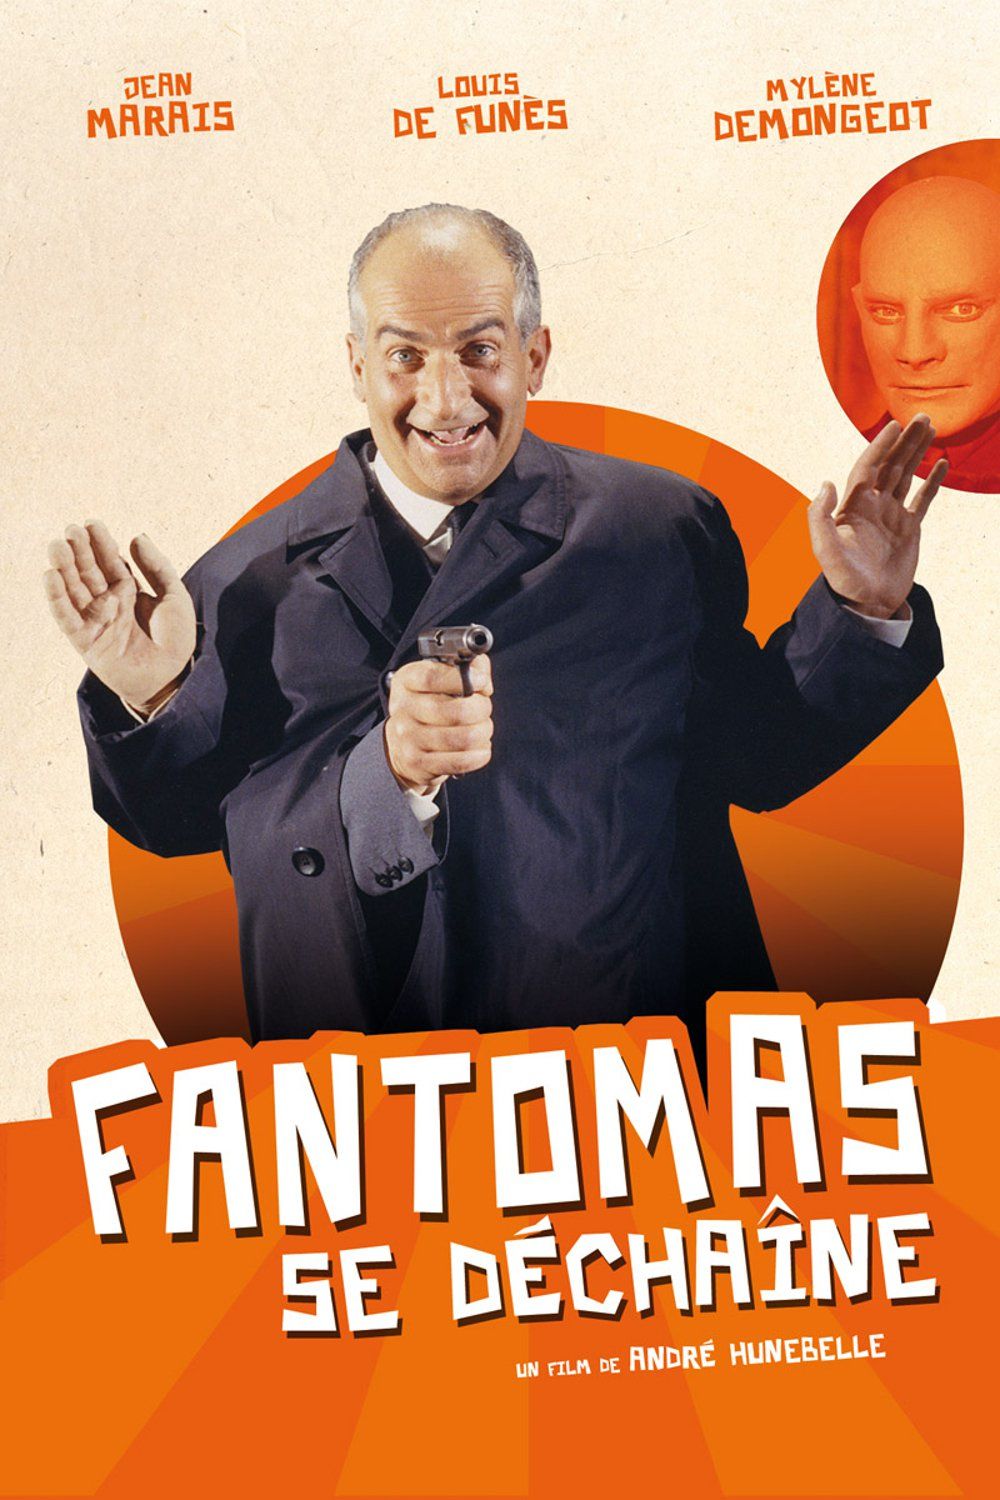 Louis De Funes Fantomas Film Fantômas se déchaîne - Alchetron, The Free Social Encyclopedia